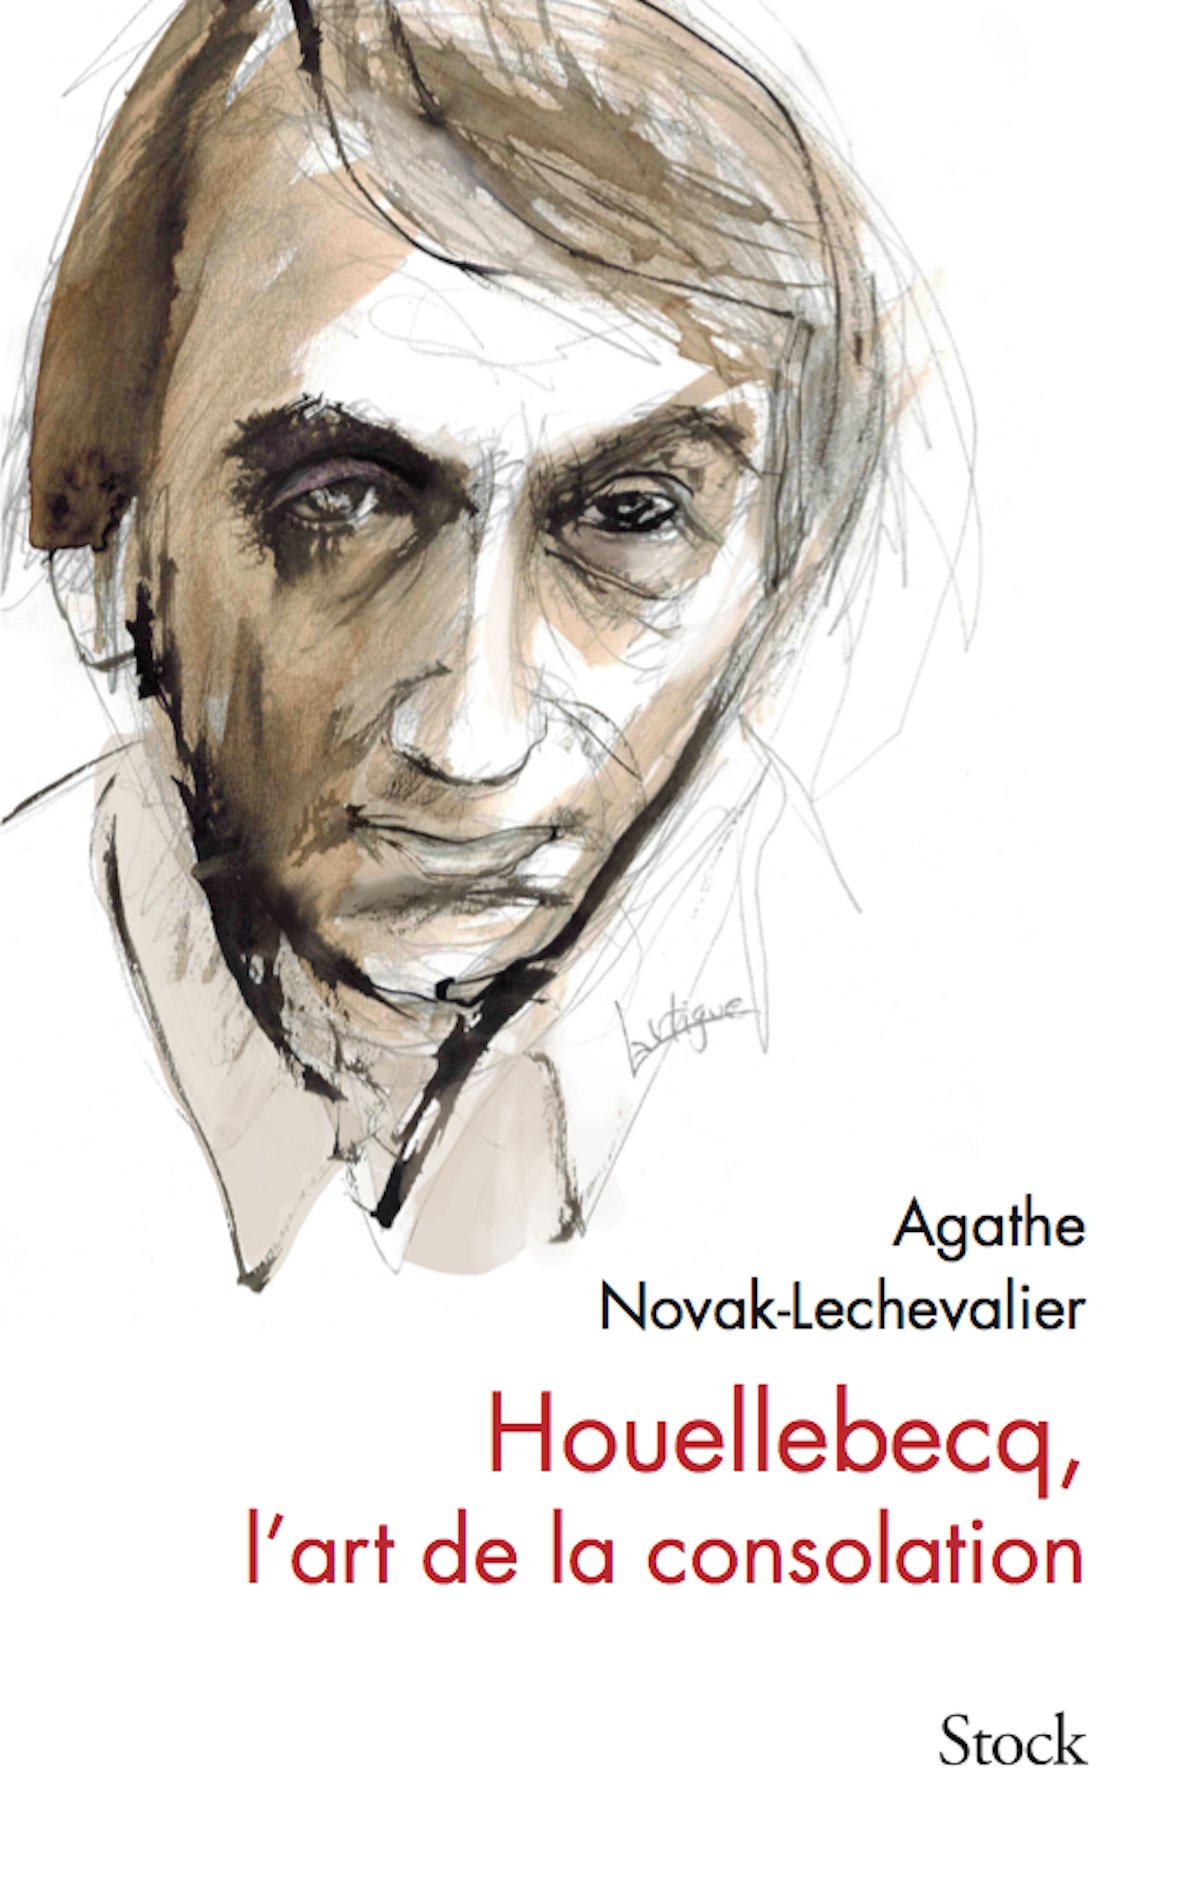 Le dessin original de Houellebecq pour la couverture du livre d’Agathe Novak-Lechevalier